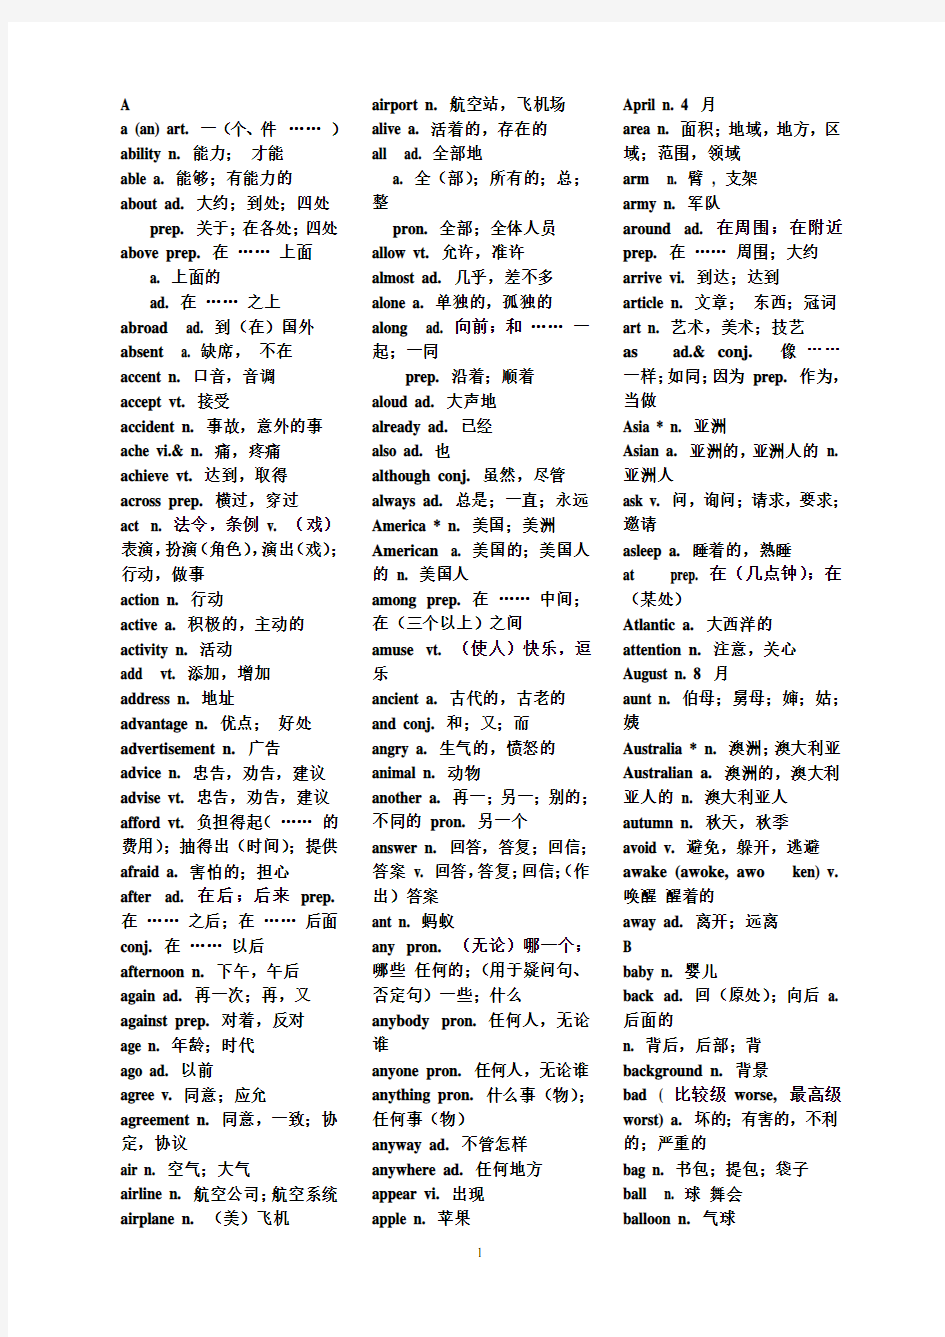 初中英语1600个词组、单词(带中文)